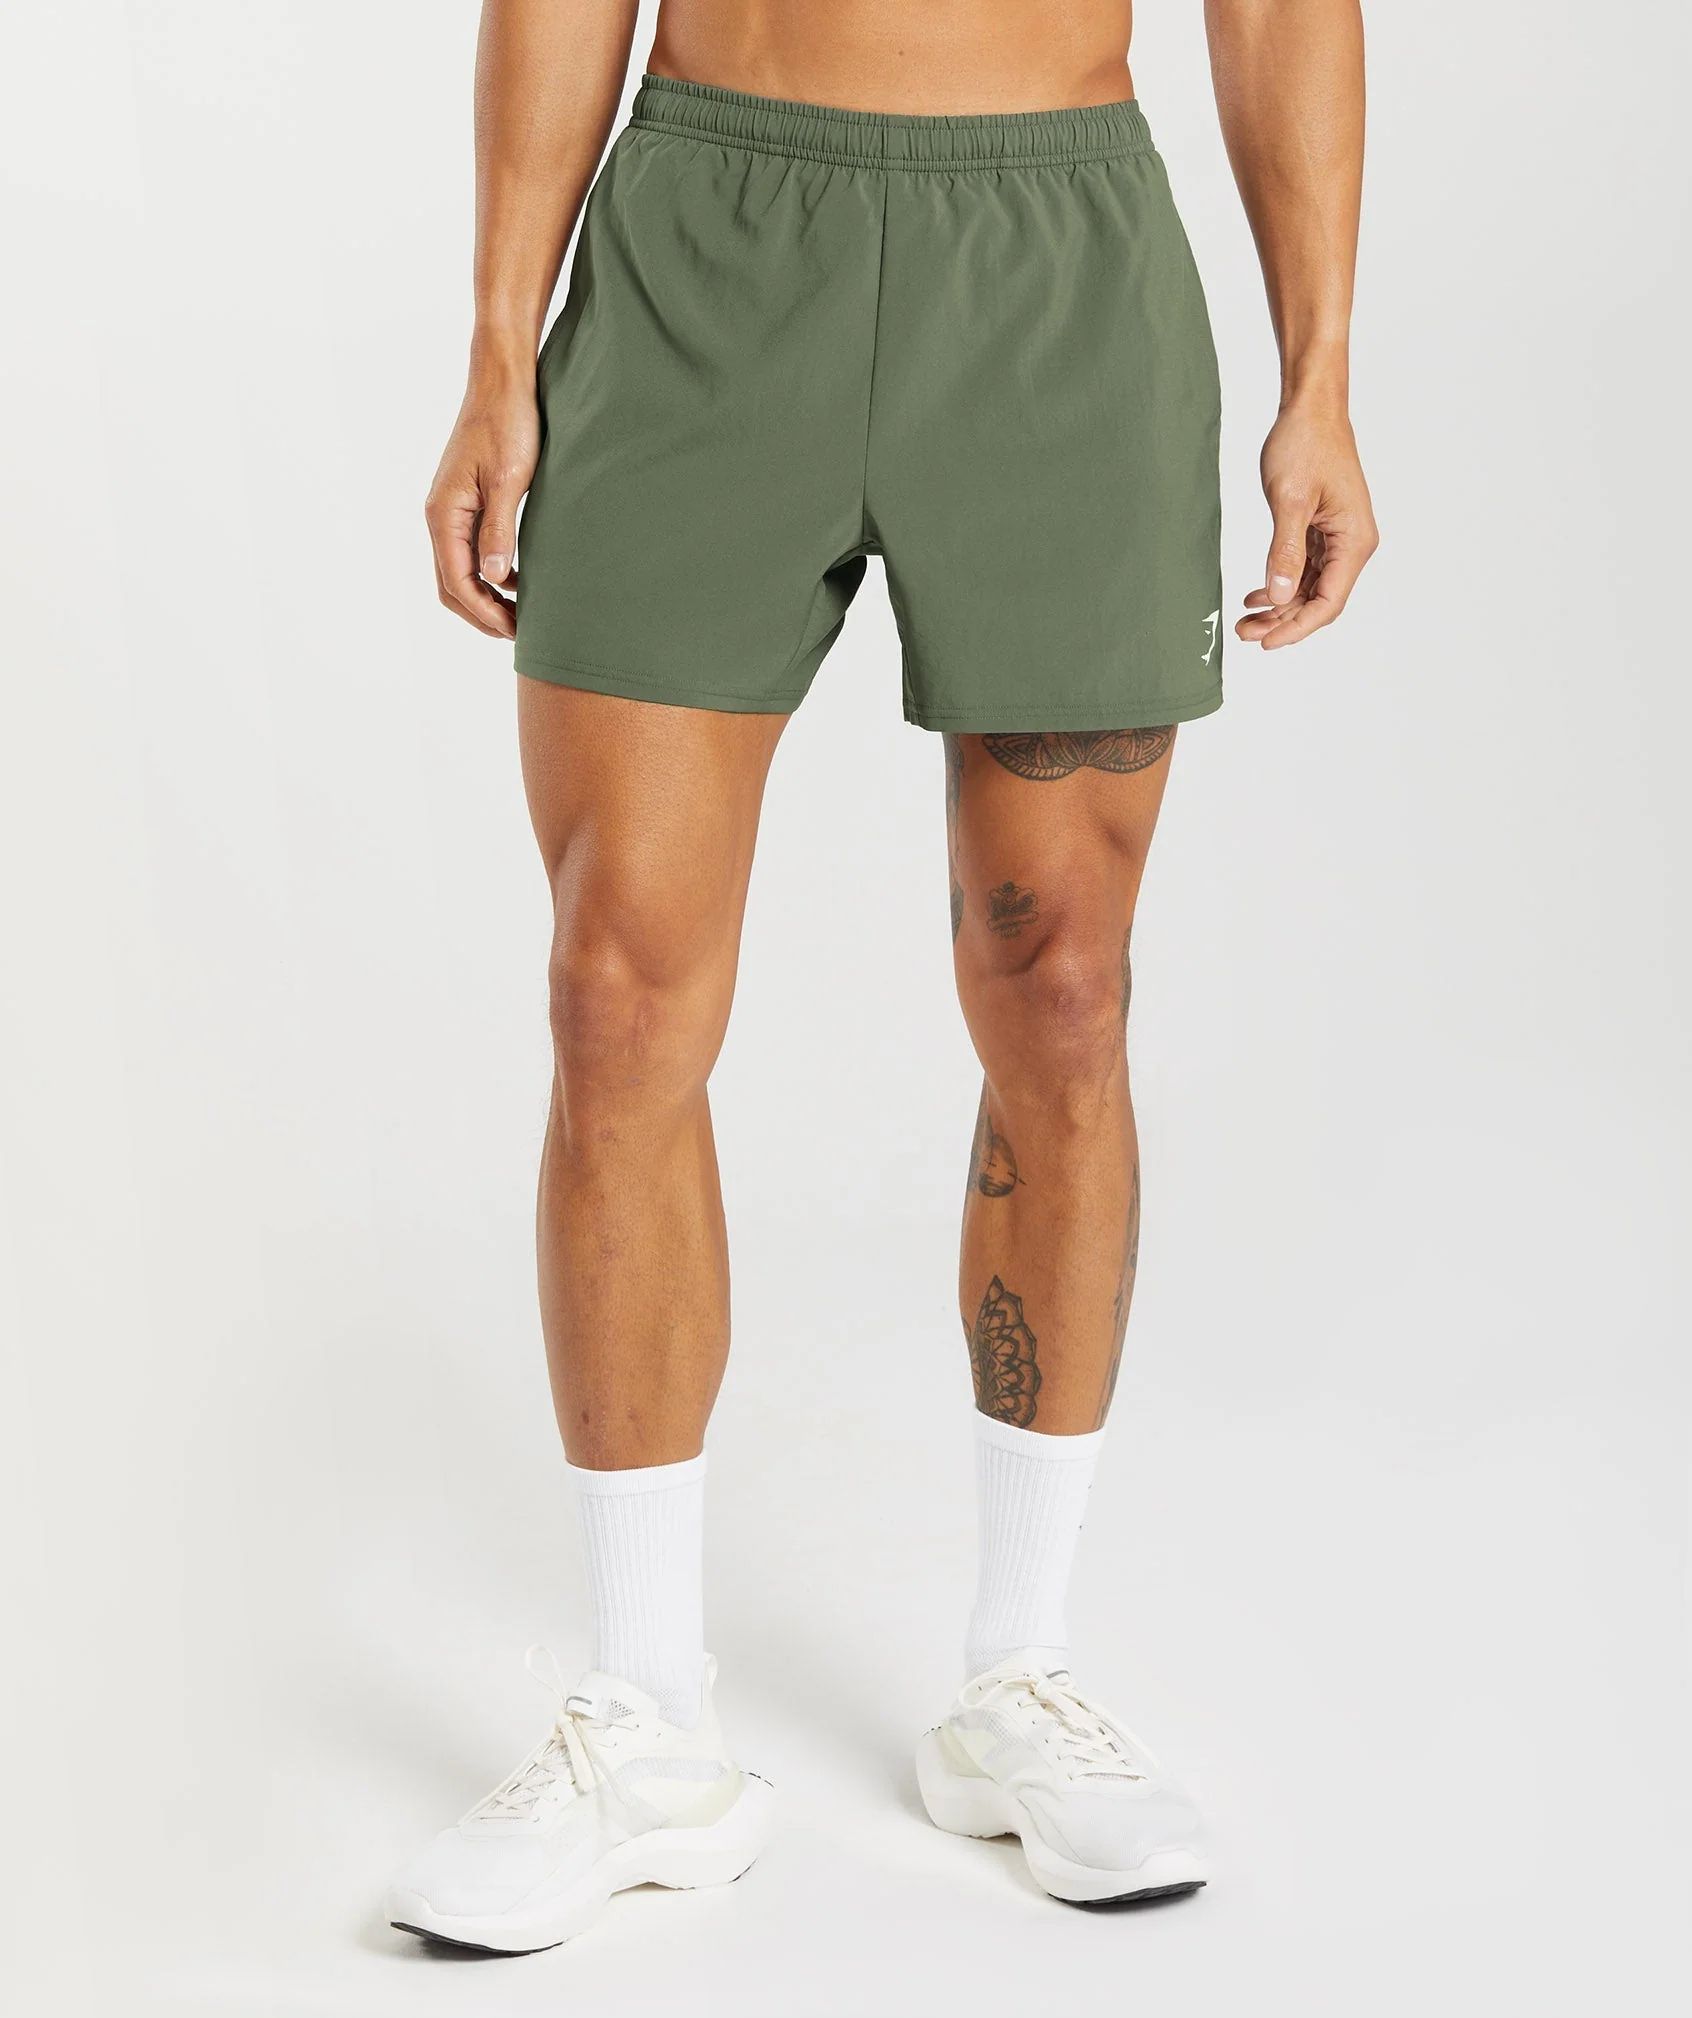 Gymshark Arrival 5" Shorts - Core Olive | Gymshark US